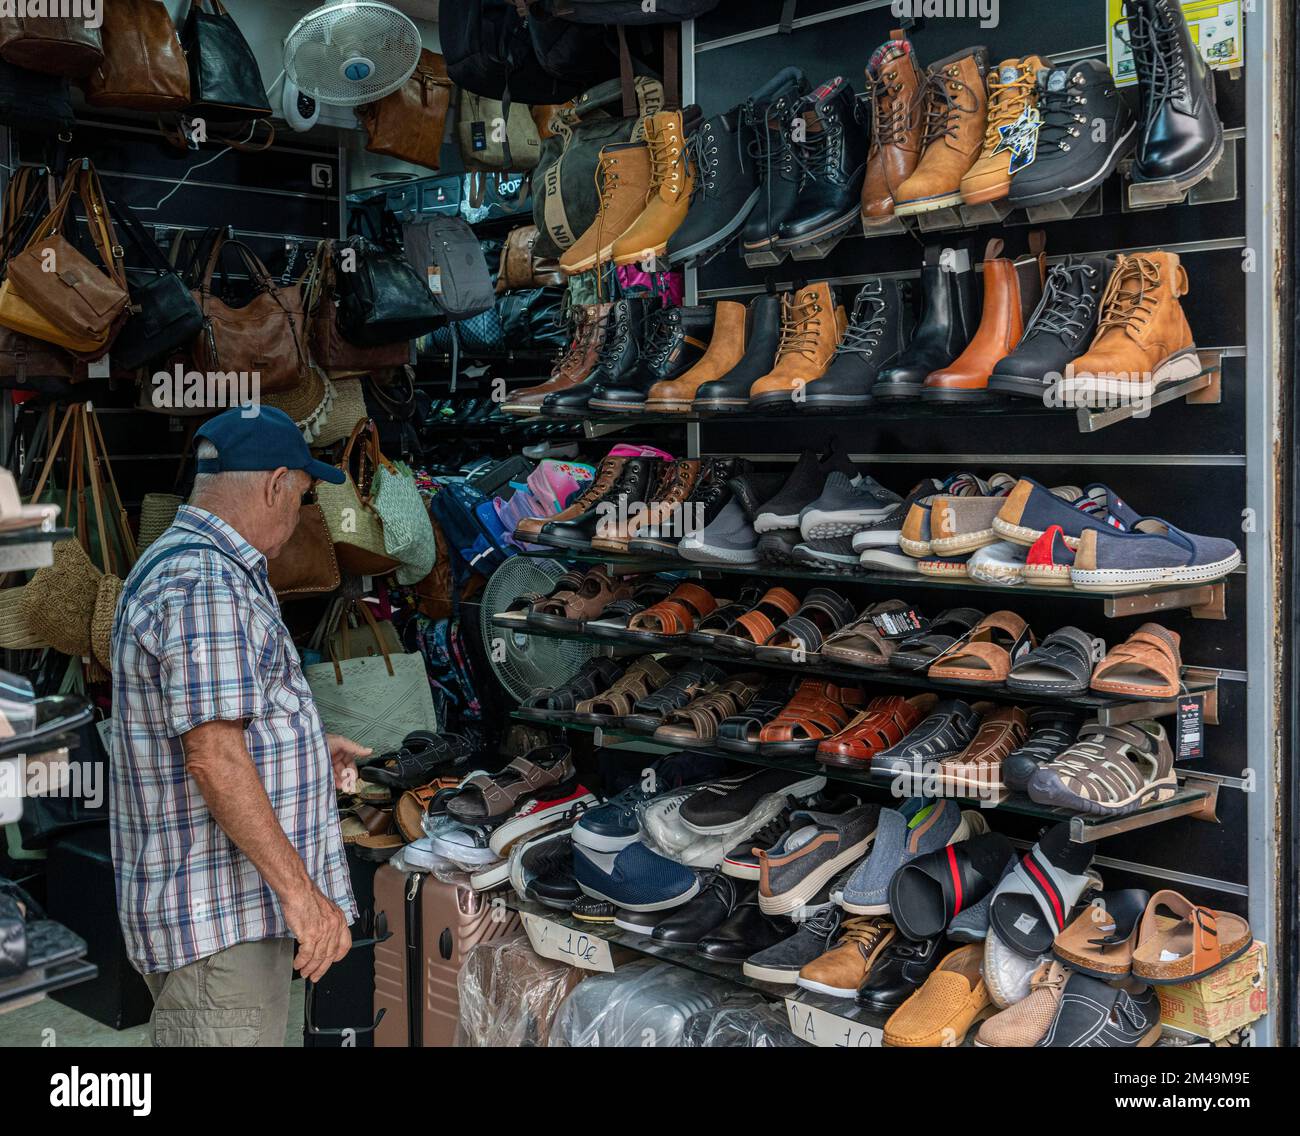 Shoes barcelona immagini e fotografie stock ad alta risoluzione - Alamy